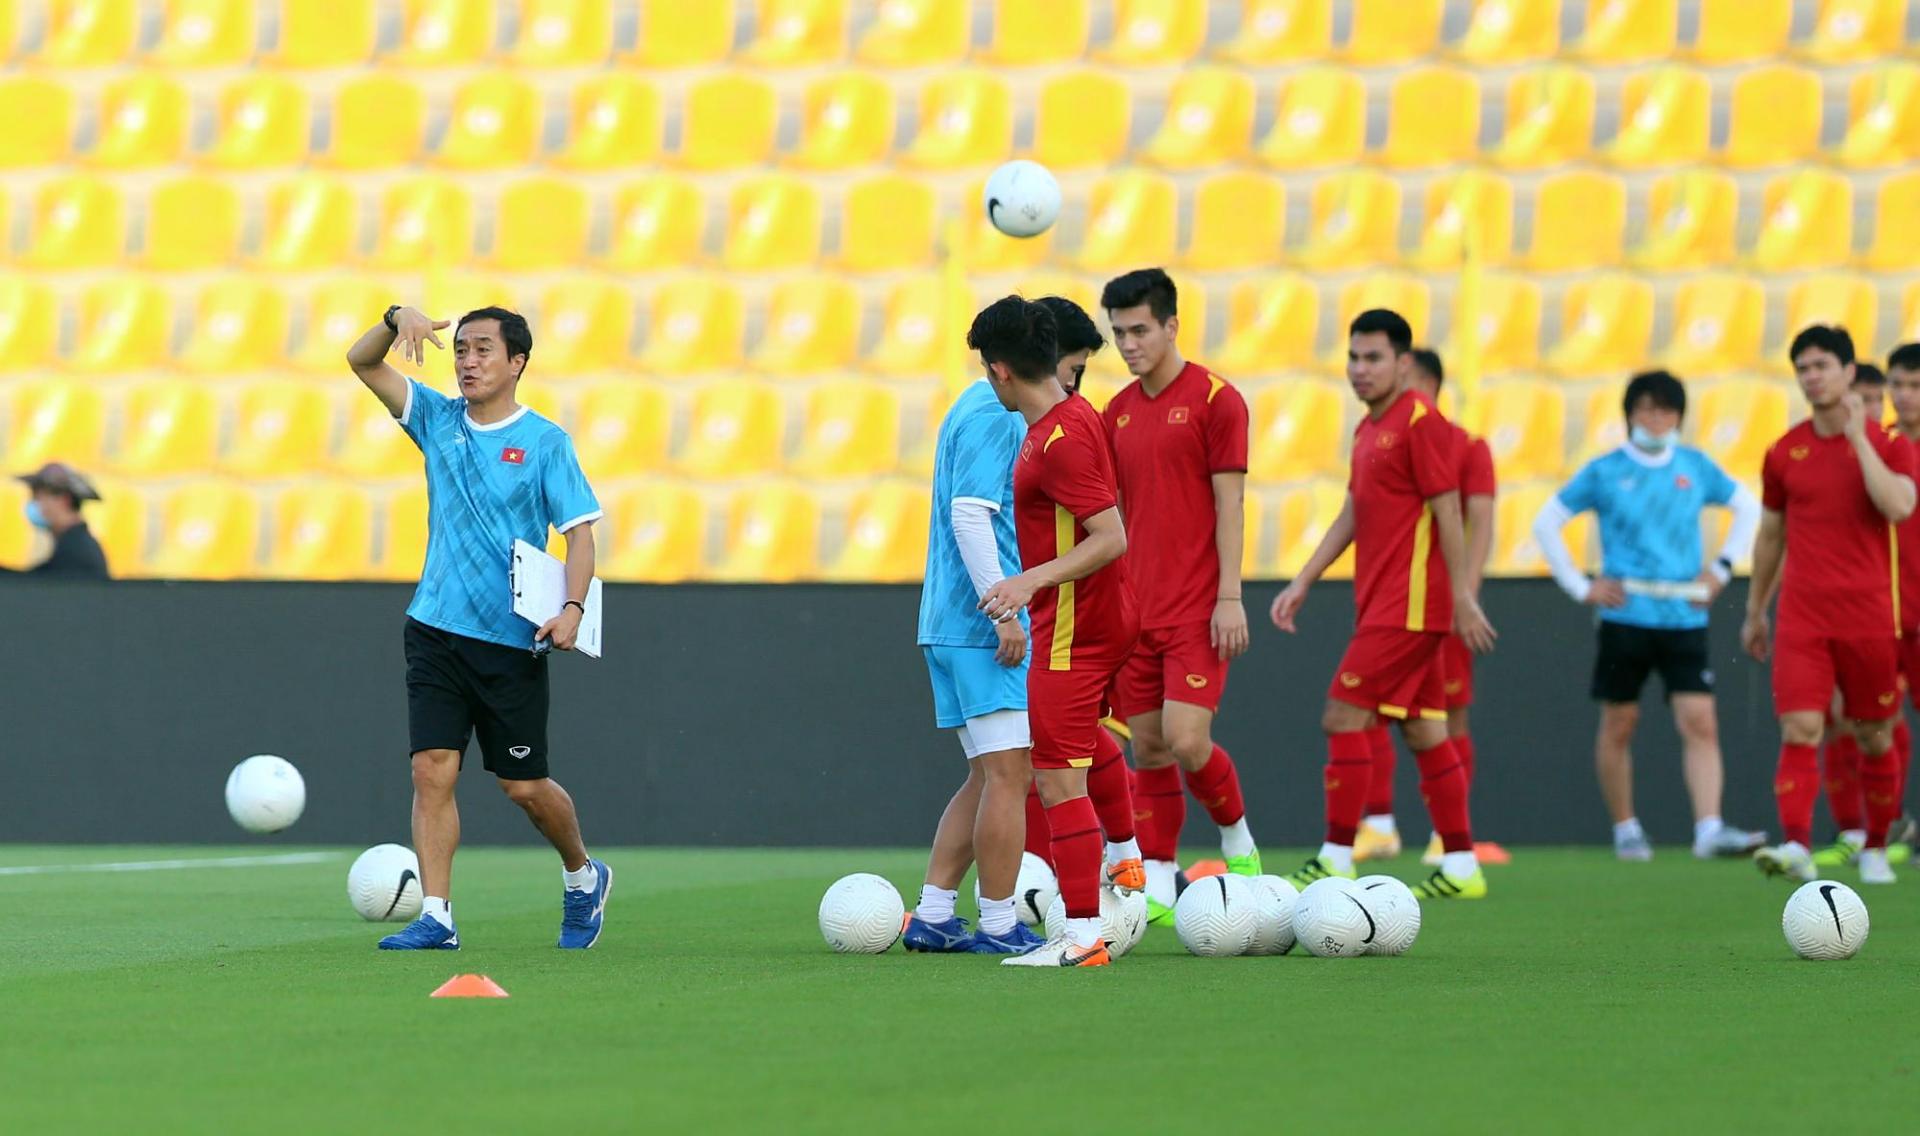 Người thay ông chỉ đạo các cầu thủ trong trận đấu sẽ là trợ lý số một Lee Young-jin (trái).